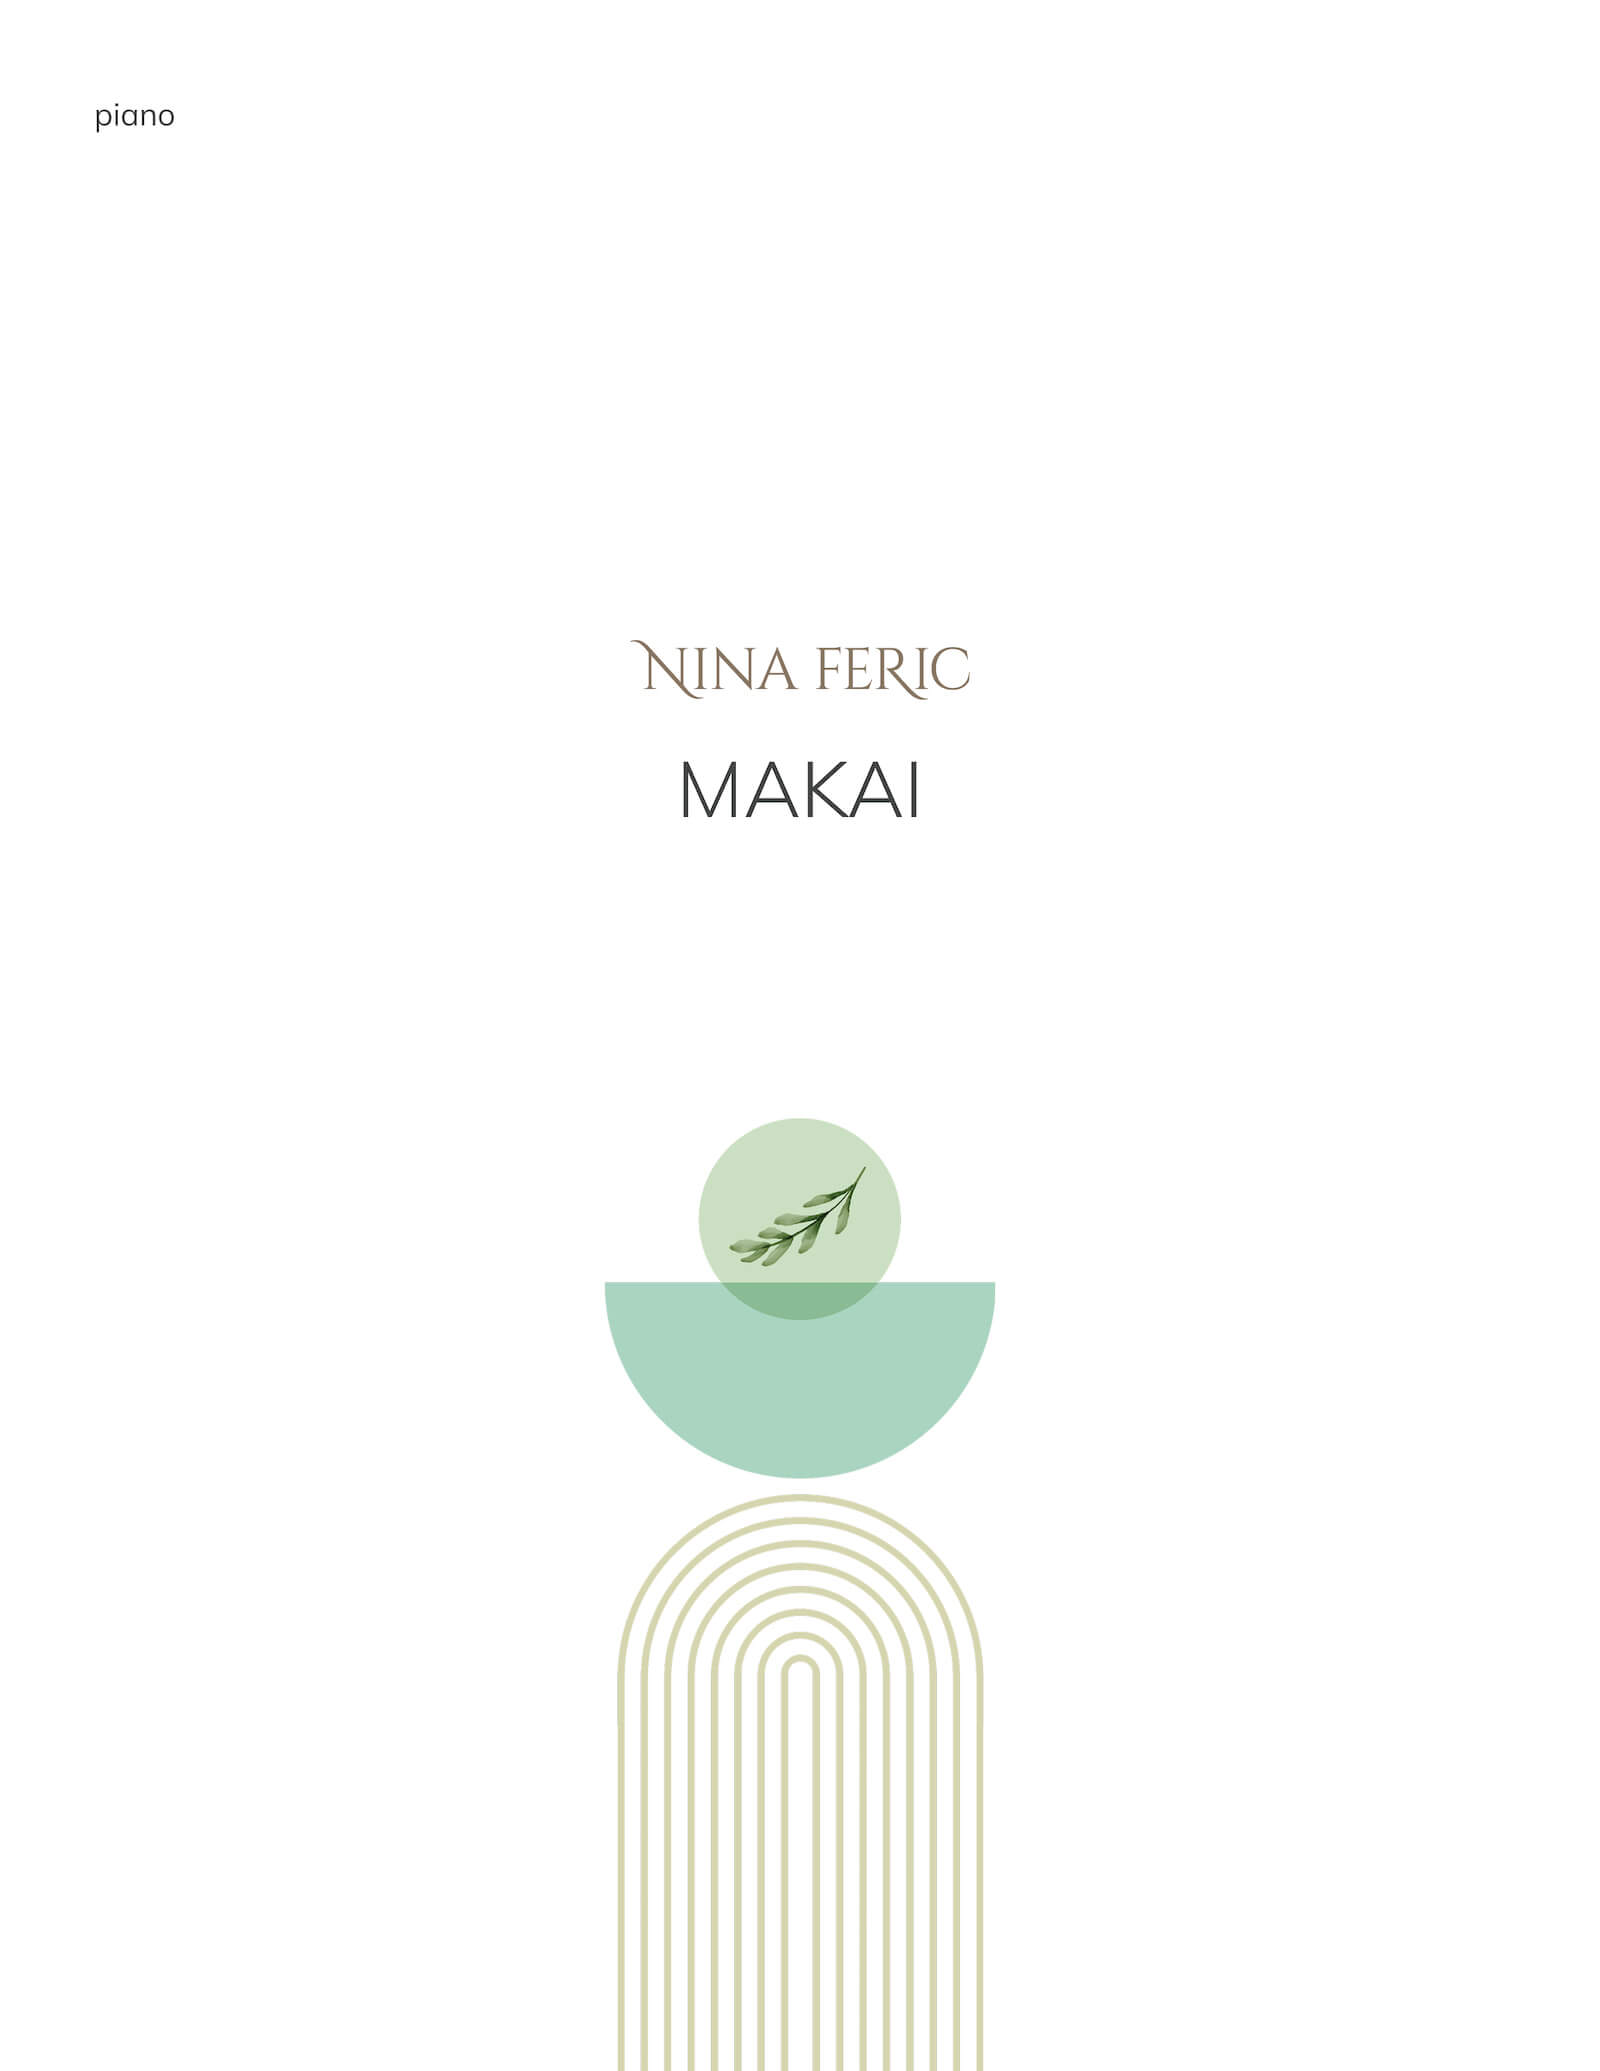 Makai - score cover